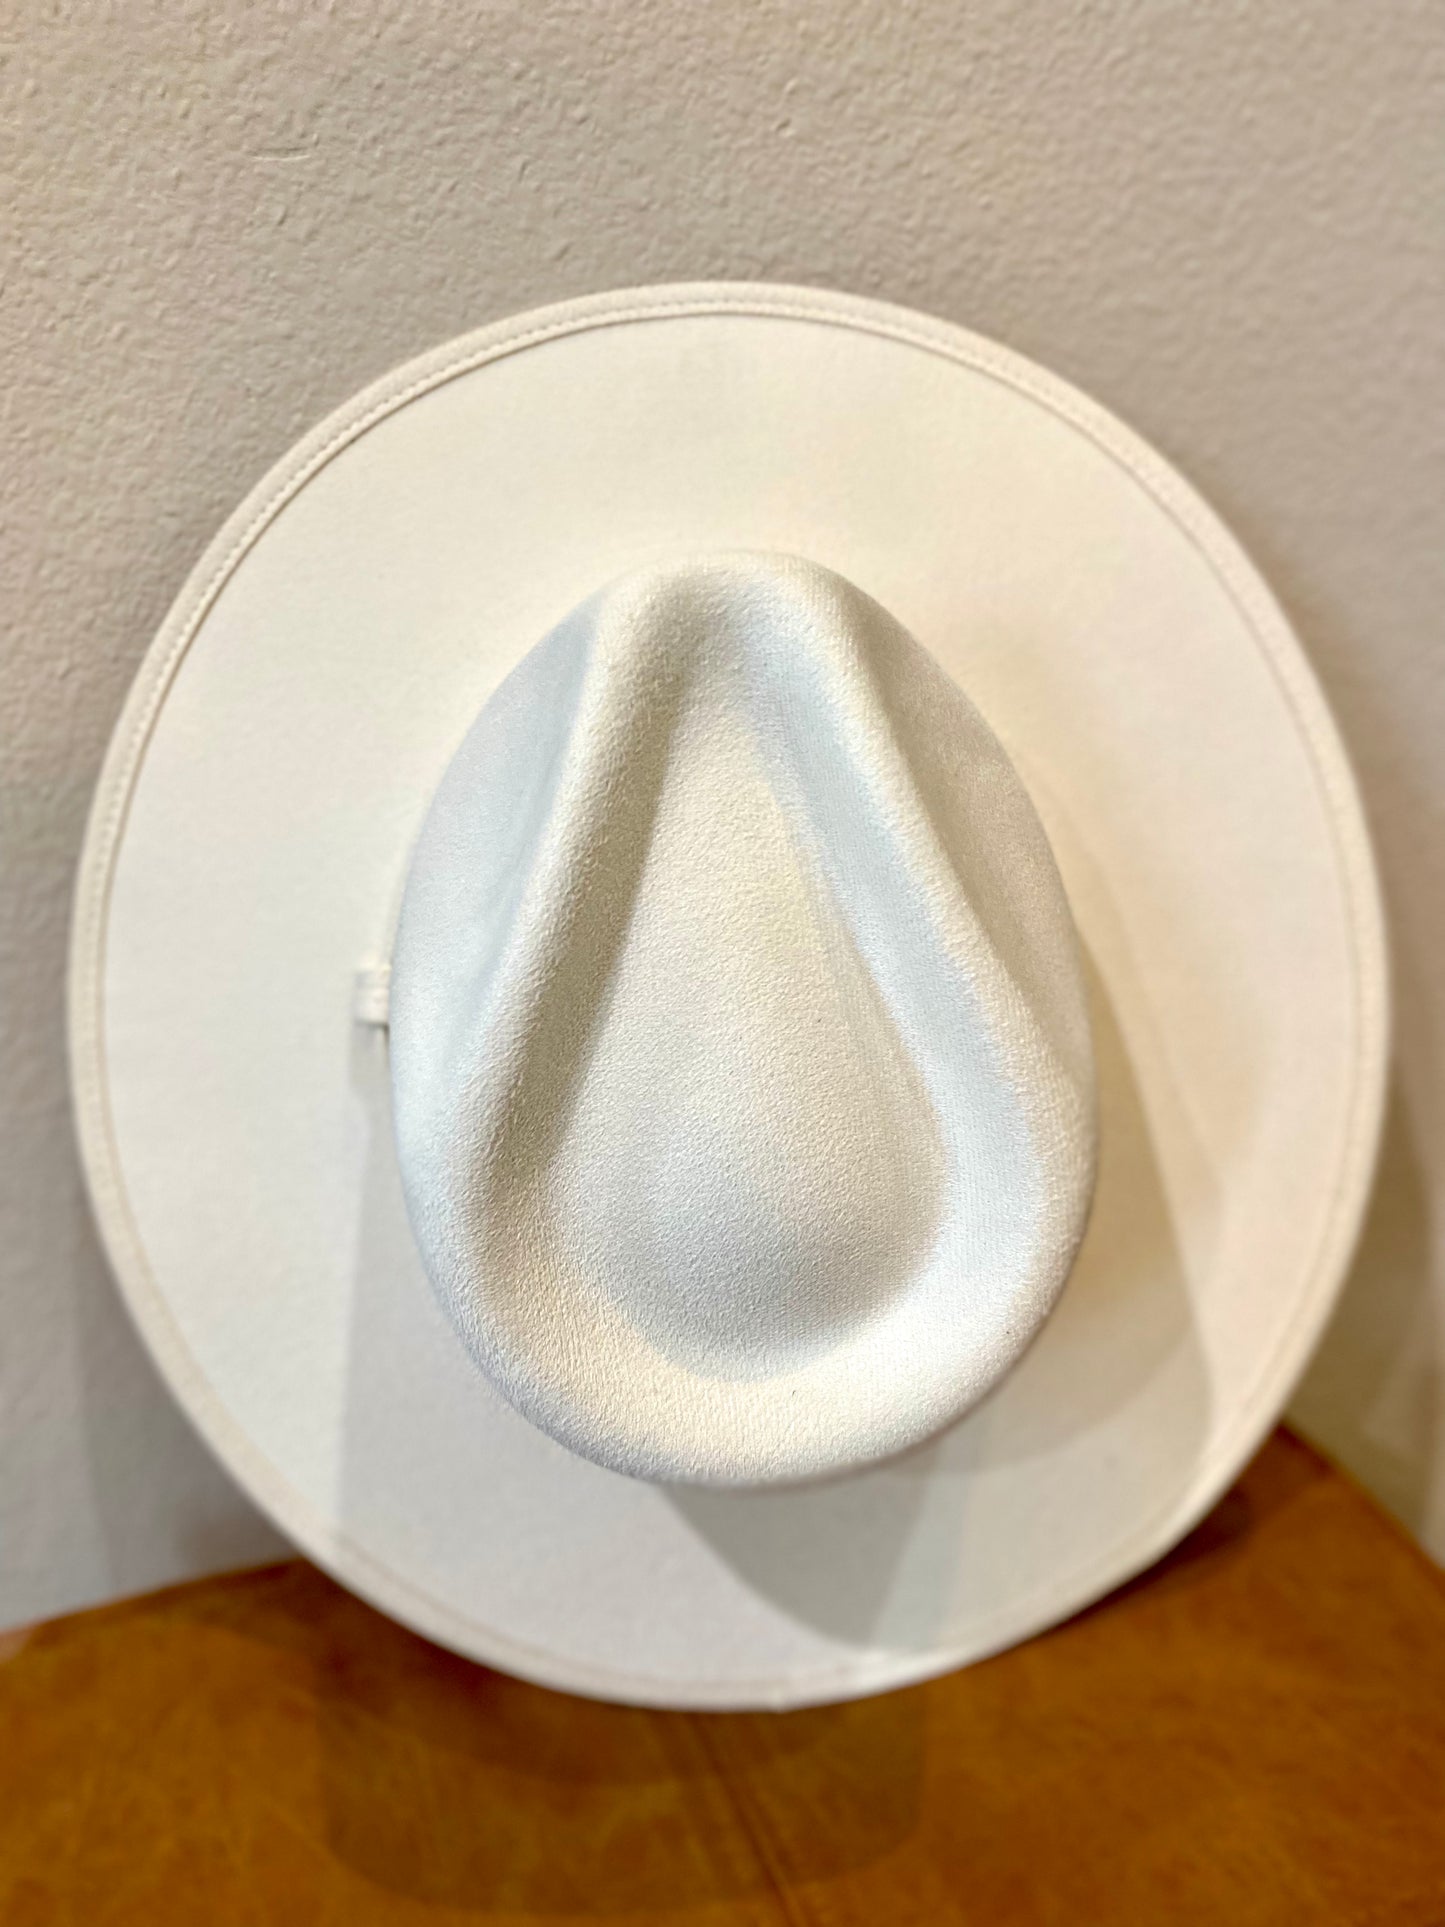 Vegan Suede Rancher Hat - White